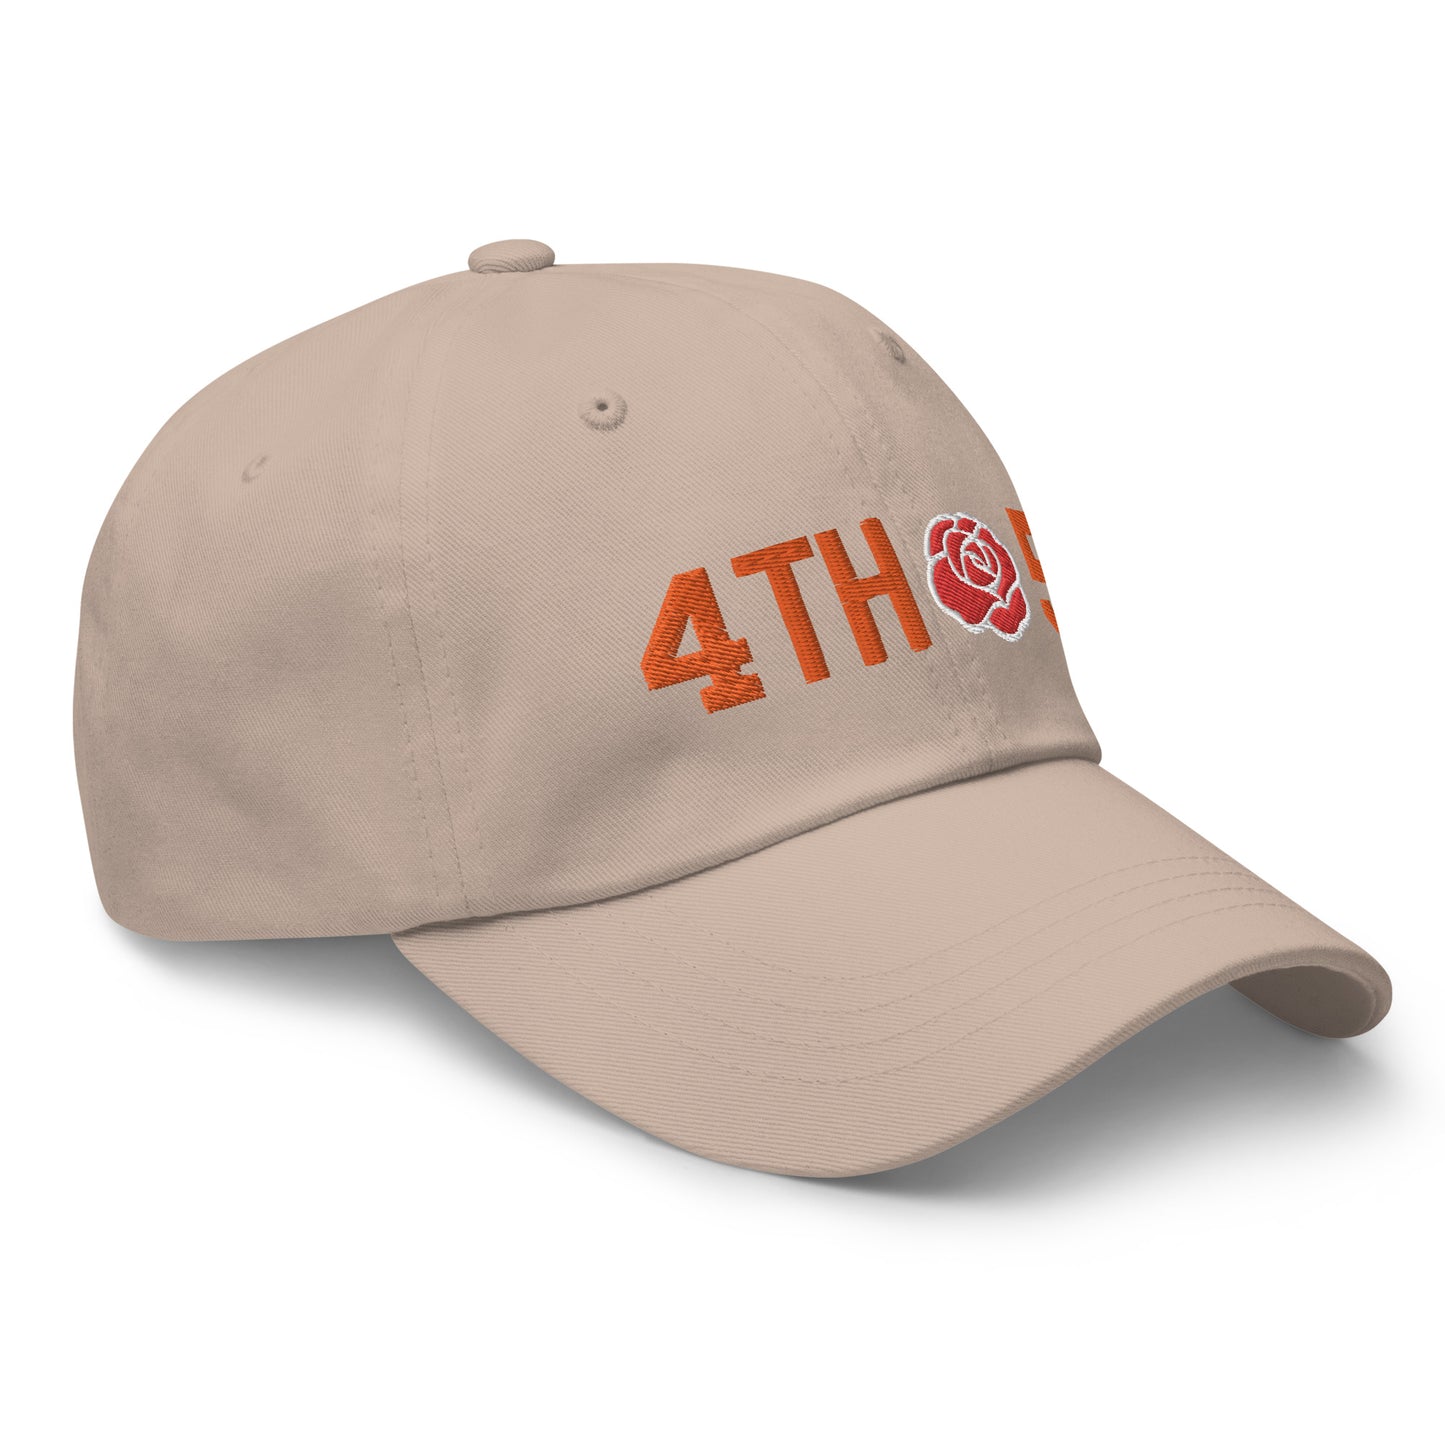 4th&5 - Texas Longhorn - Dad hat